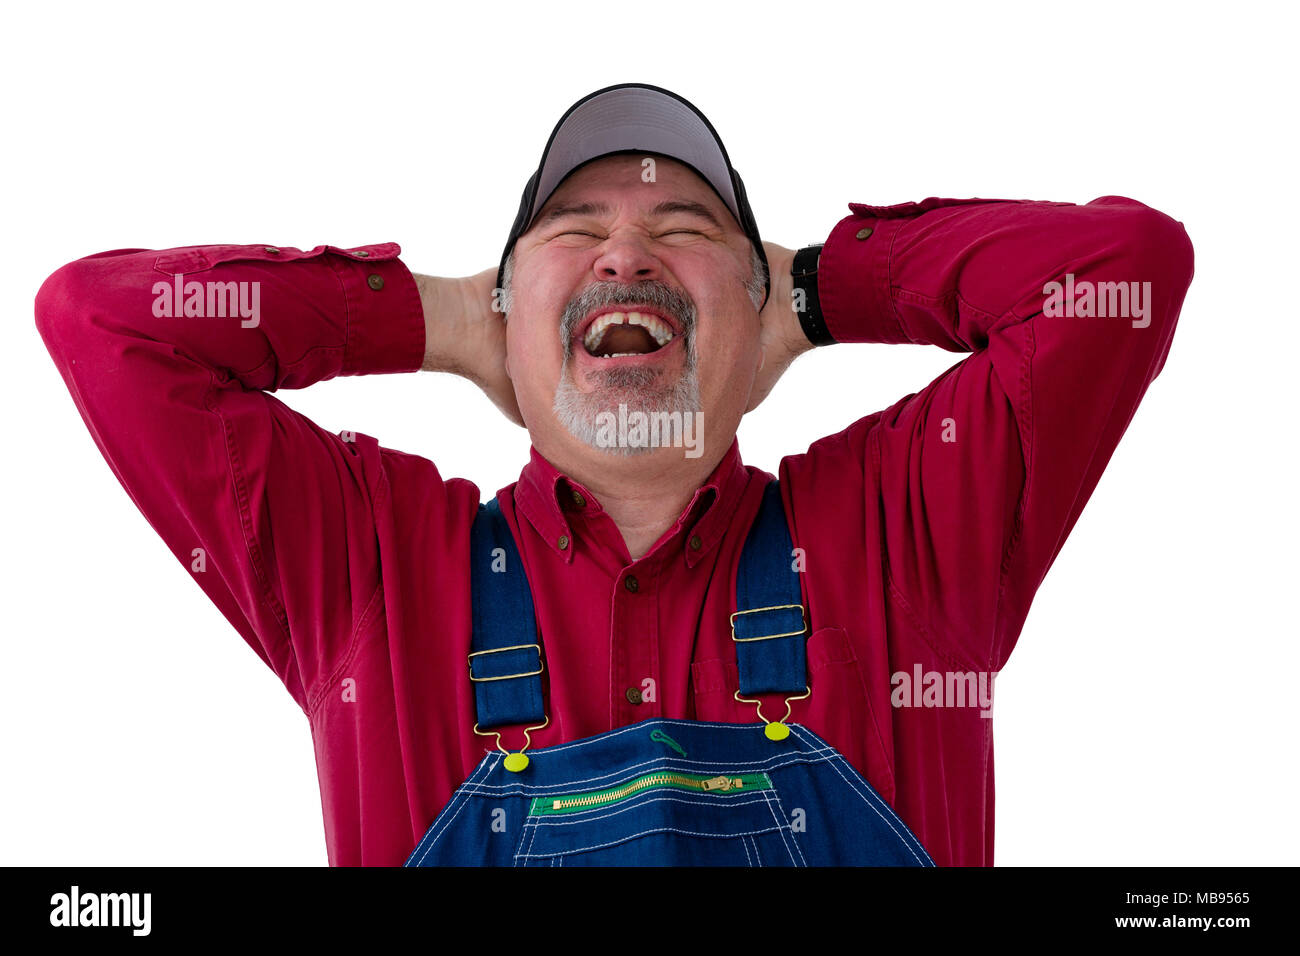 Agriculteur jovial ou travailleur dans le chapeau et salopette denim bénéficiant d'un rire chaleureux comme il jette la tête en arrière, avec les mains jointes derrière son cou isolé sur w Banque D'Images